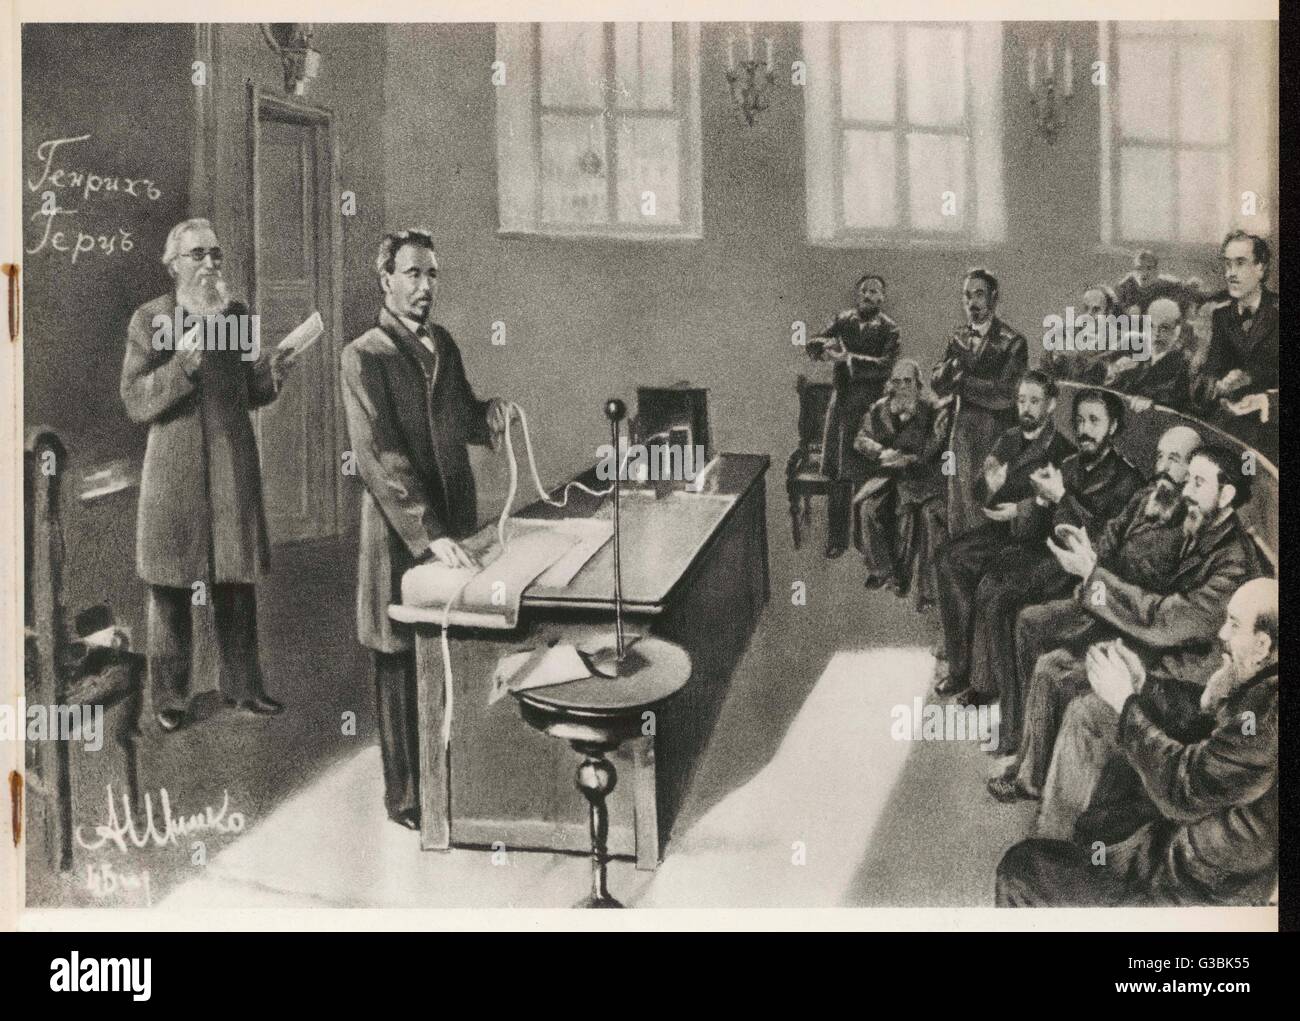 Alexander Popov zeigt seine Radio Empfang eingestellt, um der russischen  physikalisch-Chemie Gesellschaft in St. Petersburg: er wird behauptet, in  der UdSSR als der wahre Erfinder des Radios. Datum: 7. Mai 1895  Stockfotografie -